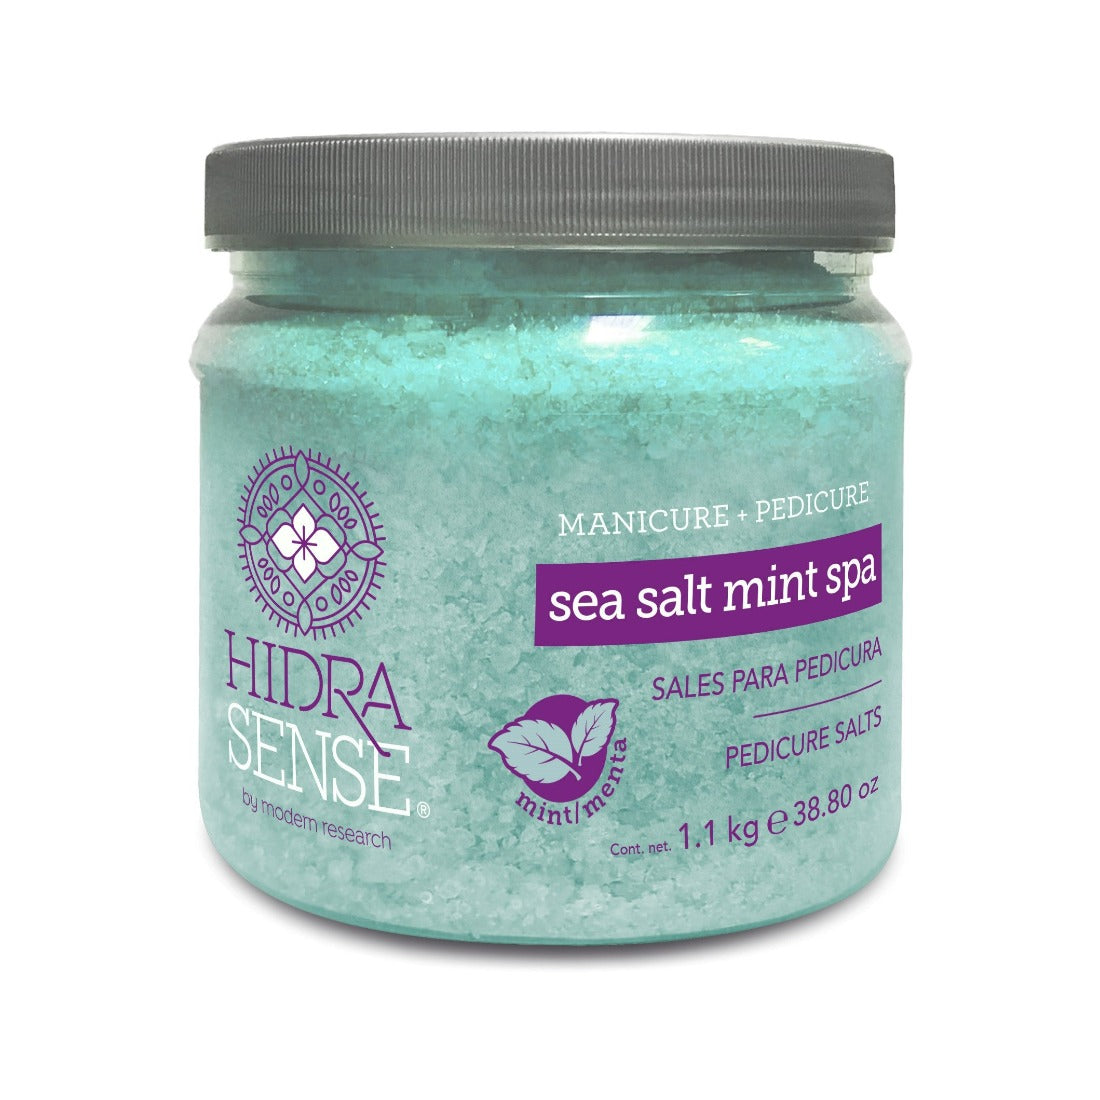 HidraSense Sales Spa Menta 1.1kg - Purifican la piel y otorgan alivio, descanso y frescura intensa